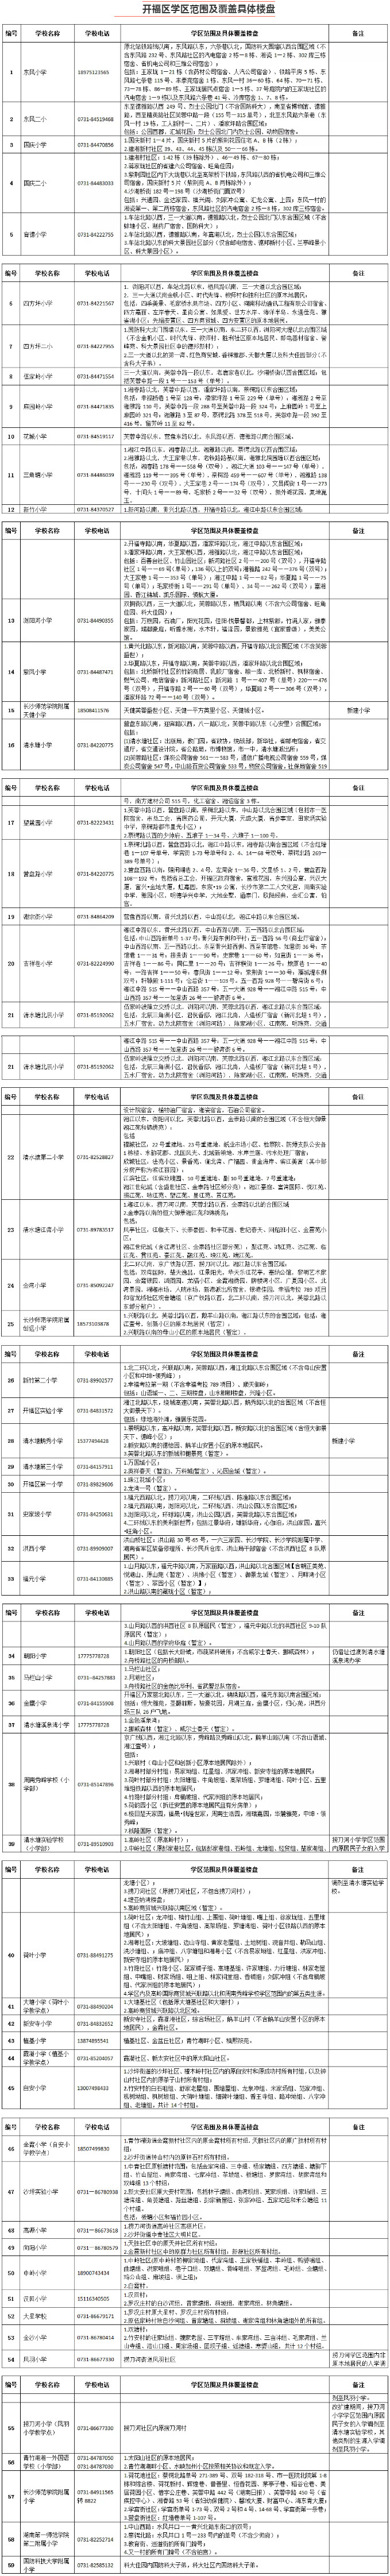 2019年开福区公办小学学区范围及覆盖具体楼盘明细表